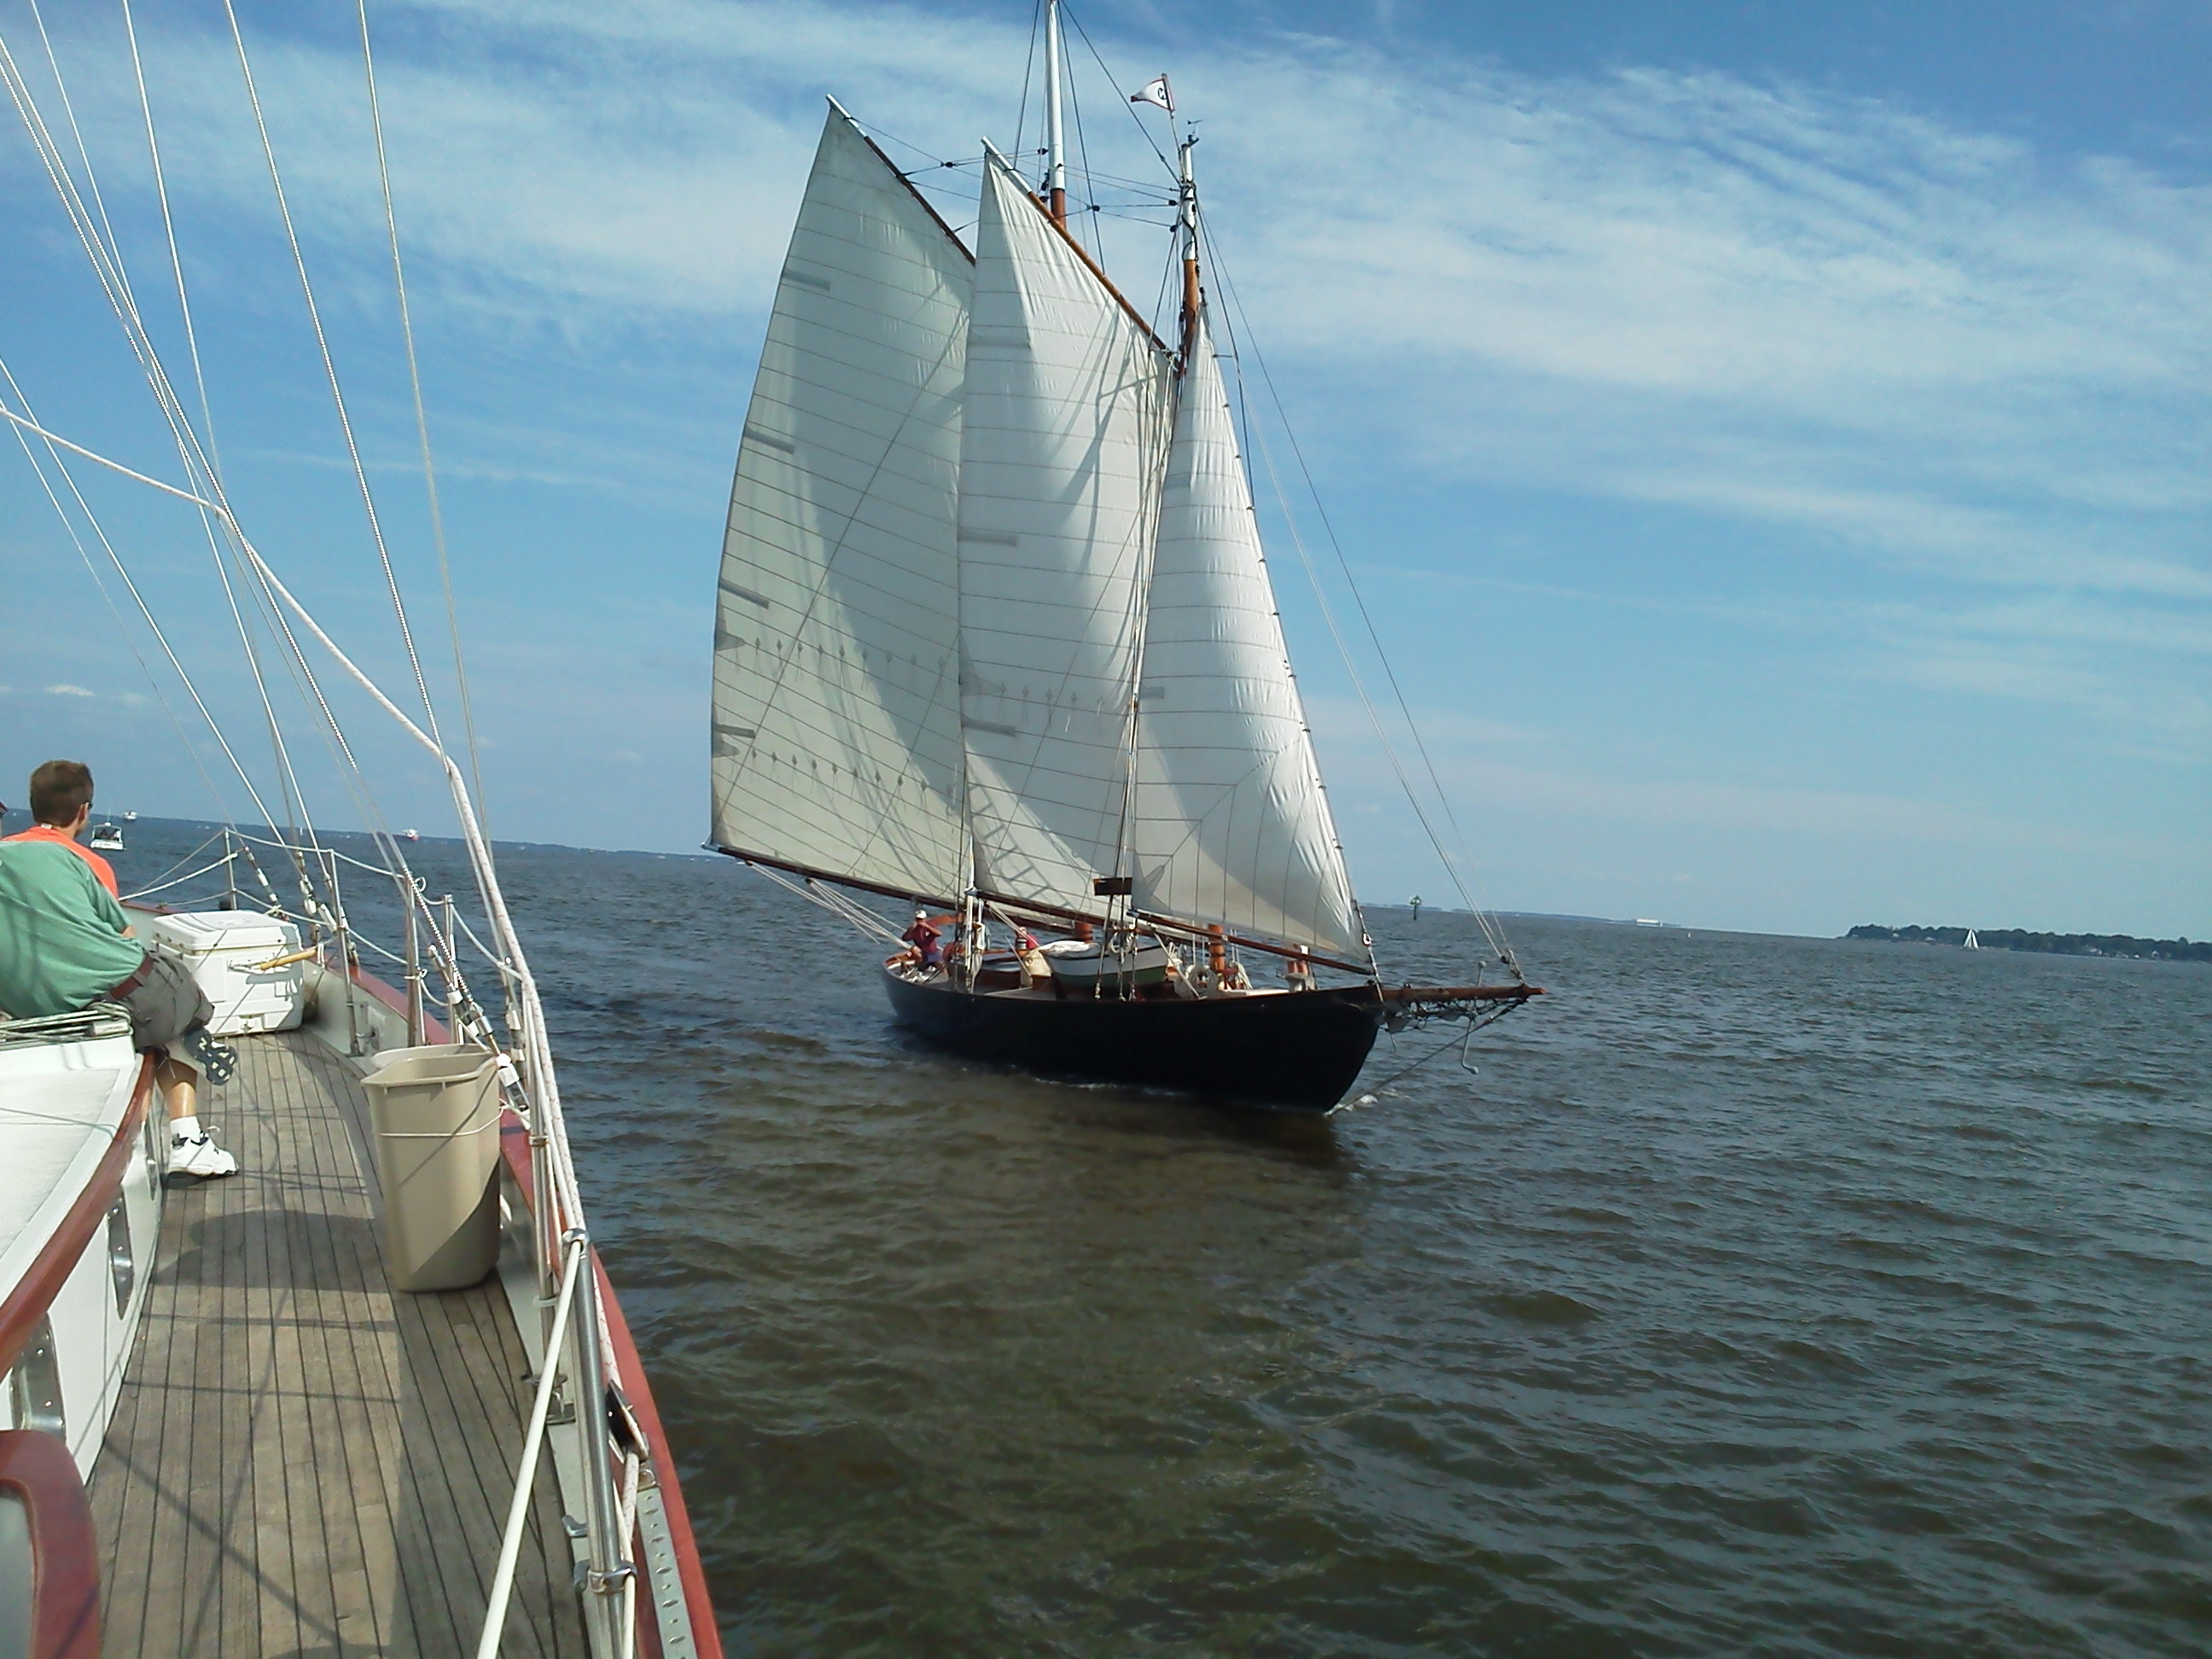 Schooner "Adventure" sailing towards Schooner Woodwind II in Annapolis